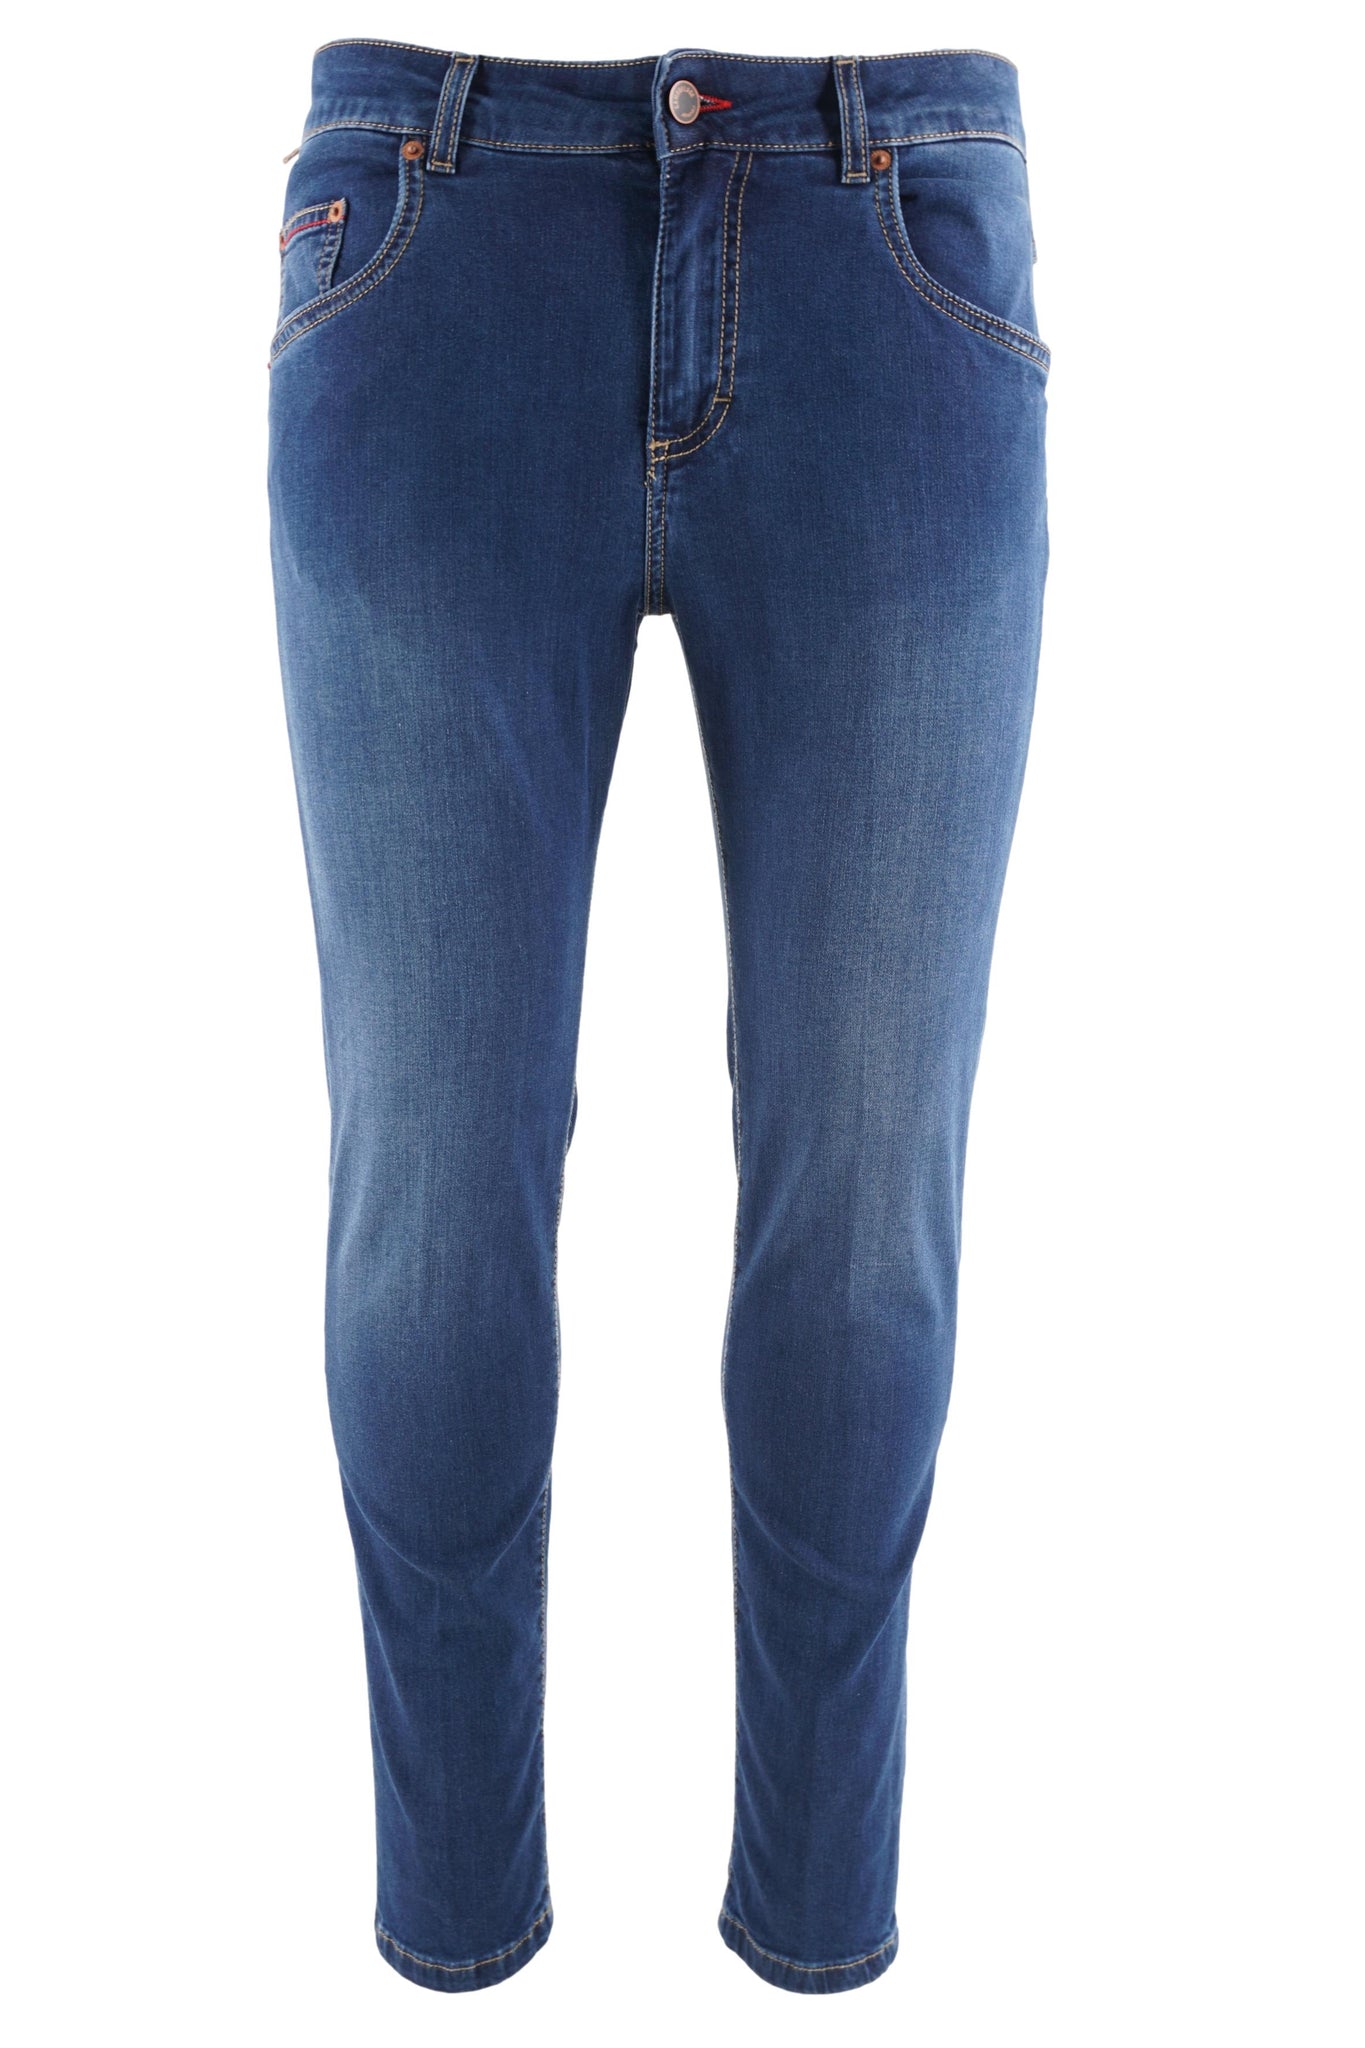 Denim Modello Rocco Slim Fit / Jeans - Ideal Moda